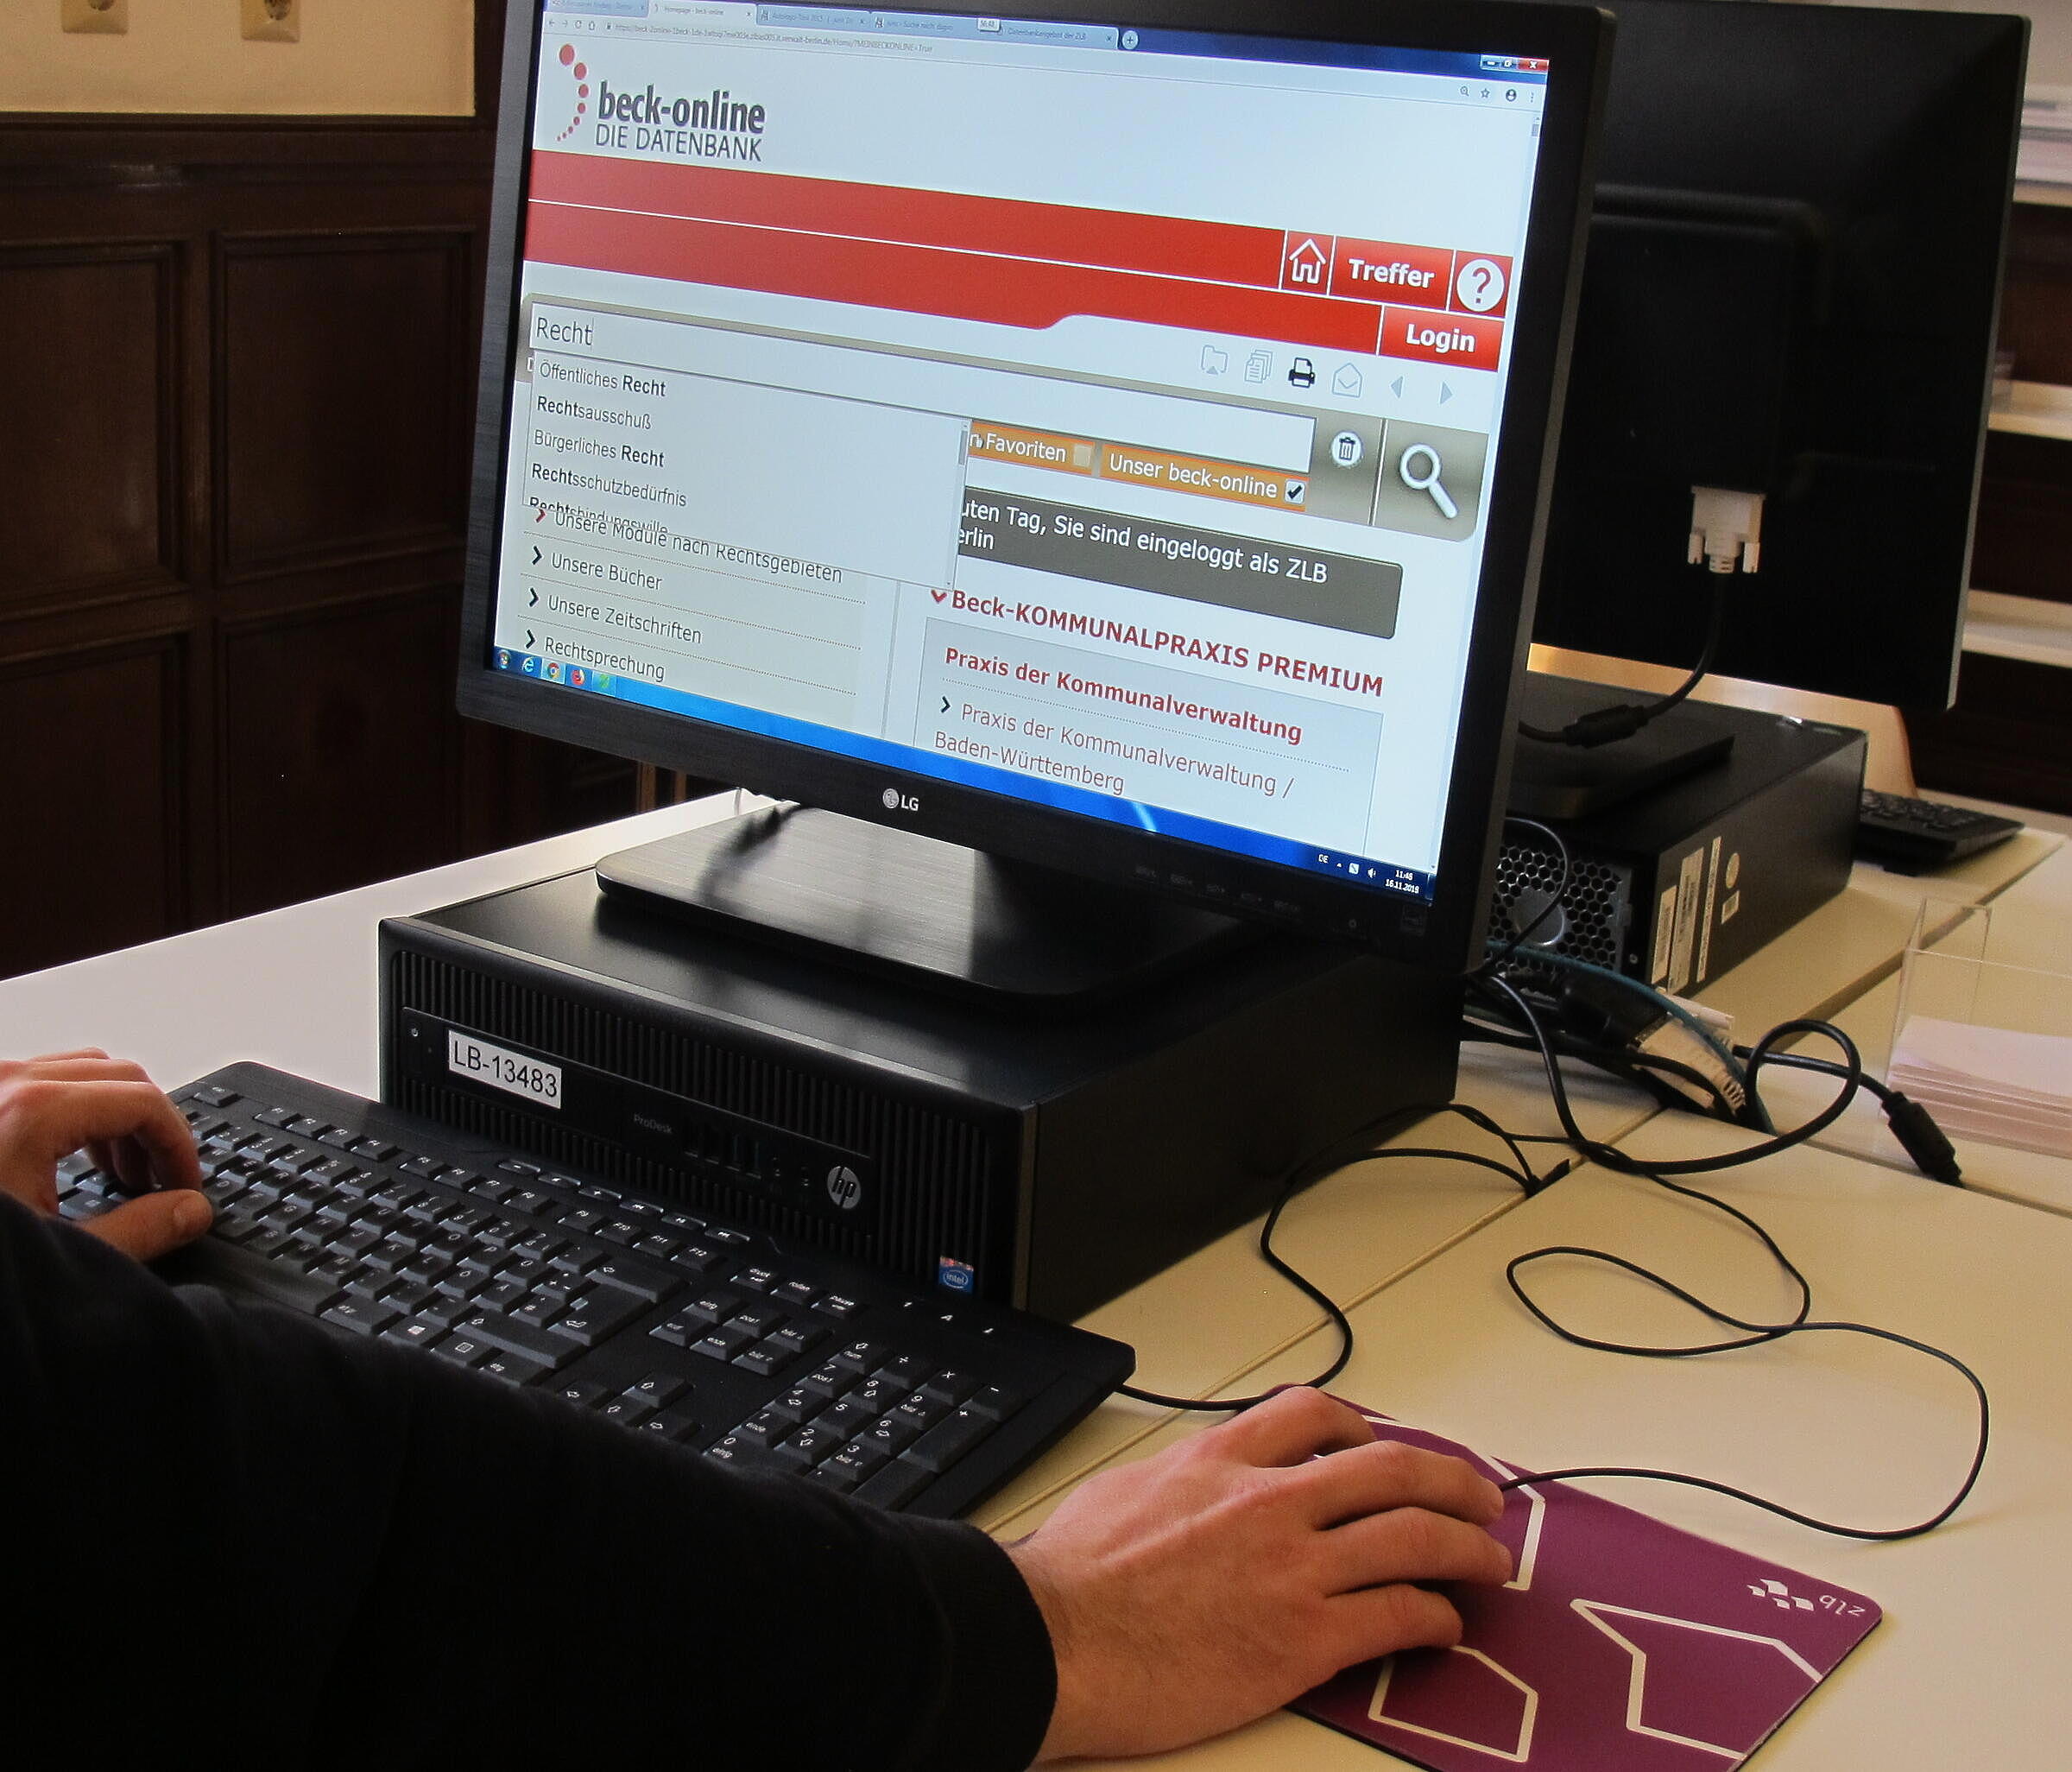 Mensch hat seine Hände auf Tastatur und Maus, während er auf Computerbildschirm blickt bei geöffneter Datenbank Beck Online